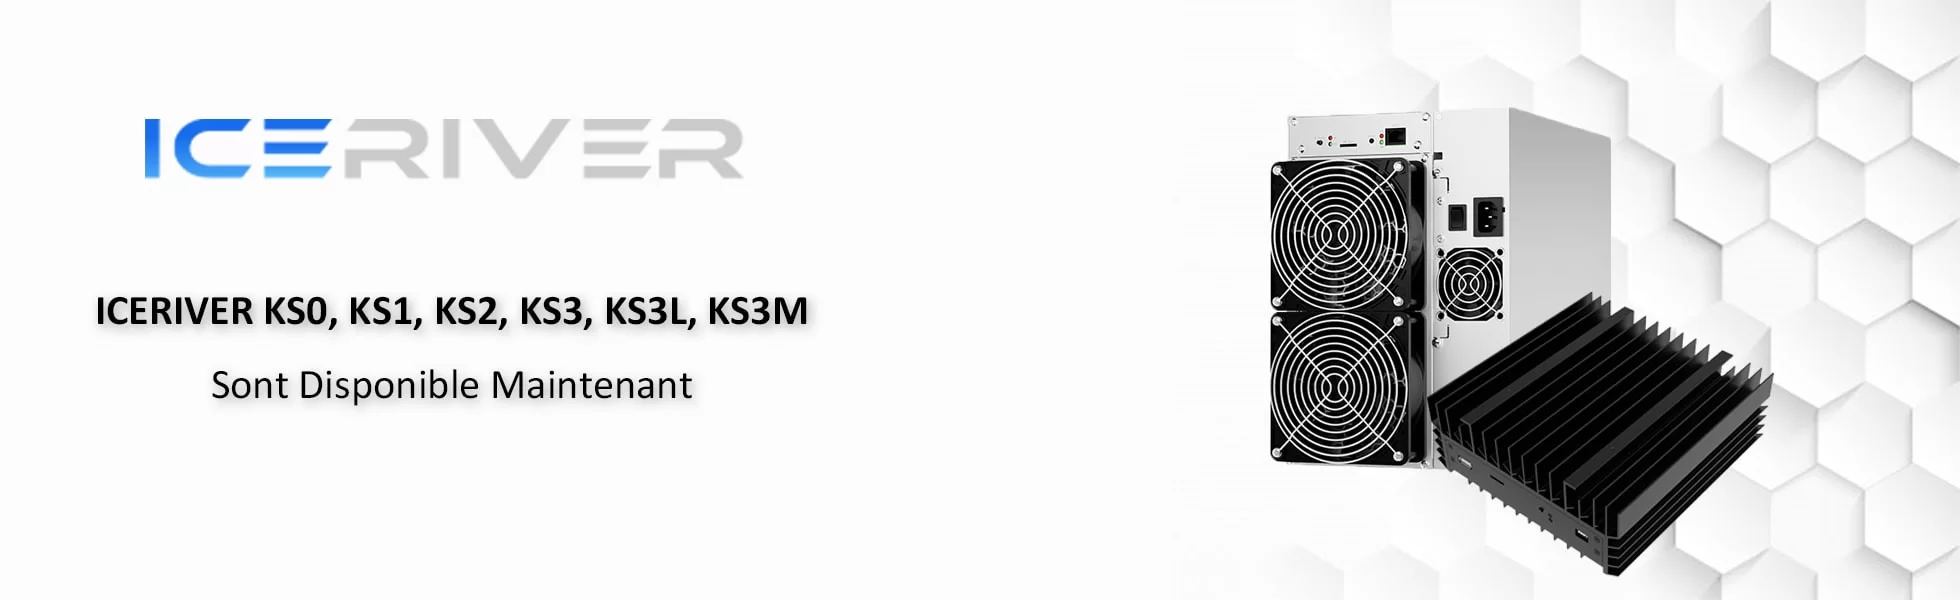 Iceriver KS0, KS1, KS2, KS3, KS3L, KS3M ya están disponibles